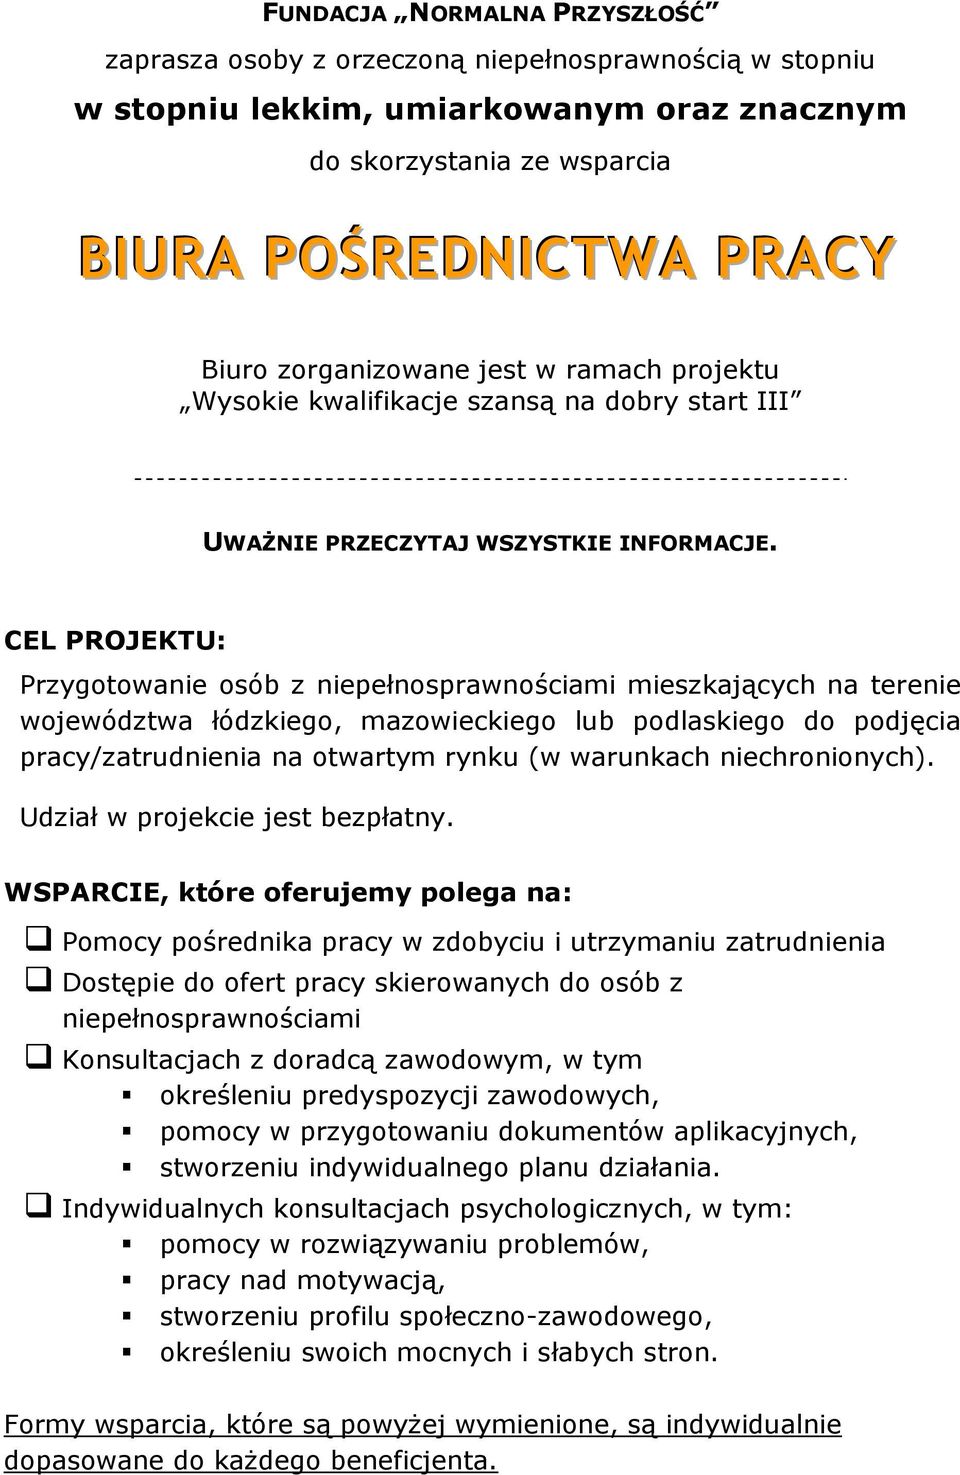 CEL PROJEKTU: Przygotowanie osób z niepełnosprawnościami mieszkających na terenie województwa łódzkiego, mazowieckiego lub podlaskiego do podjęcia pracy/zatrudnienia na otwartym rynku (w warunkach